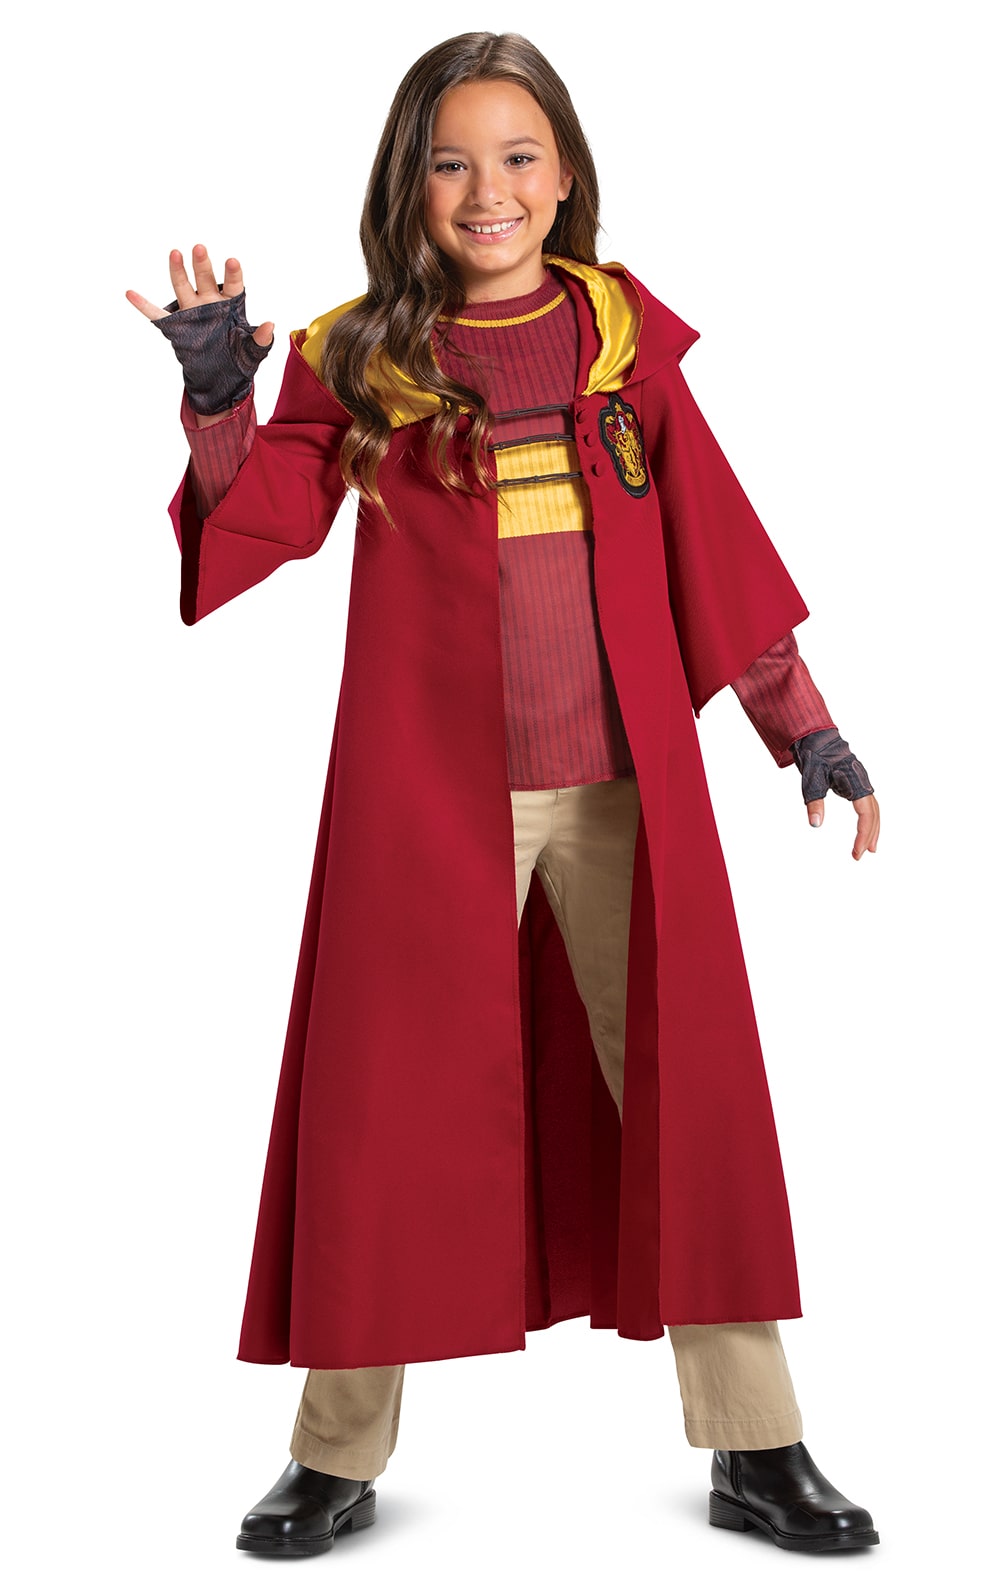 Kids Prestige Harry Potter Costume